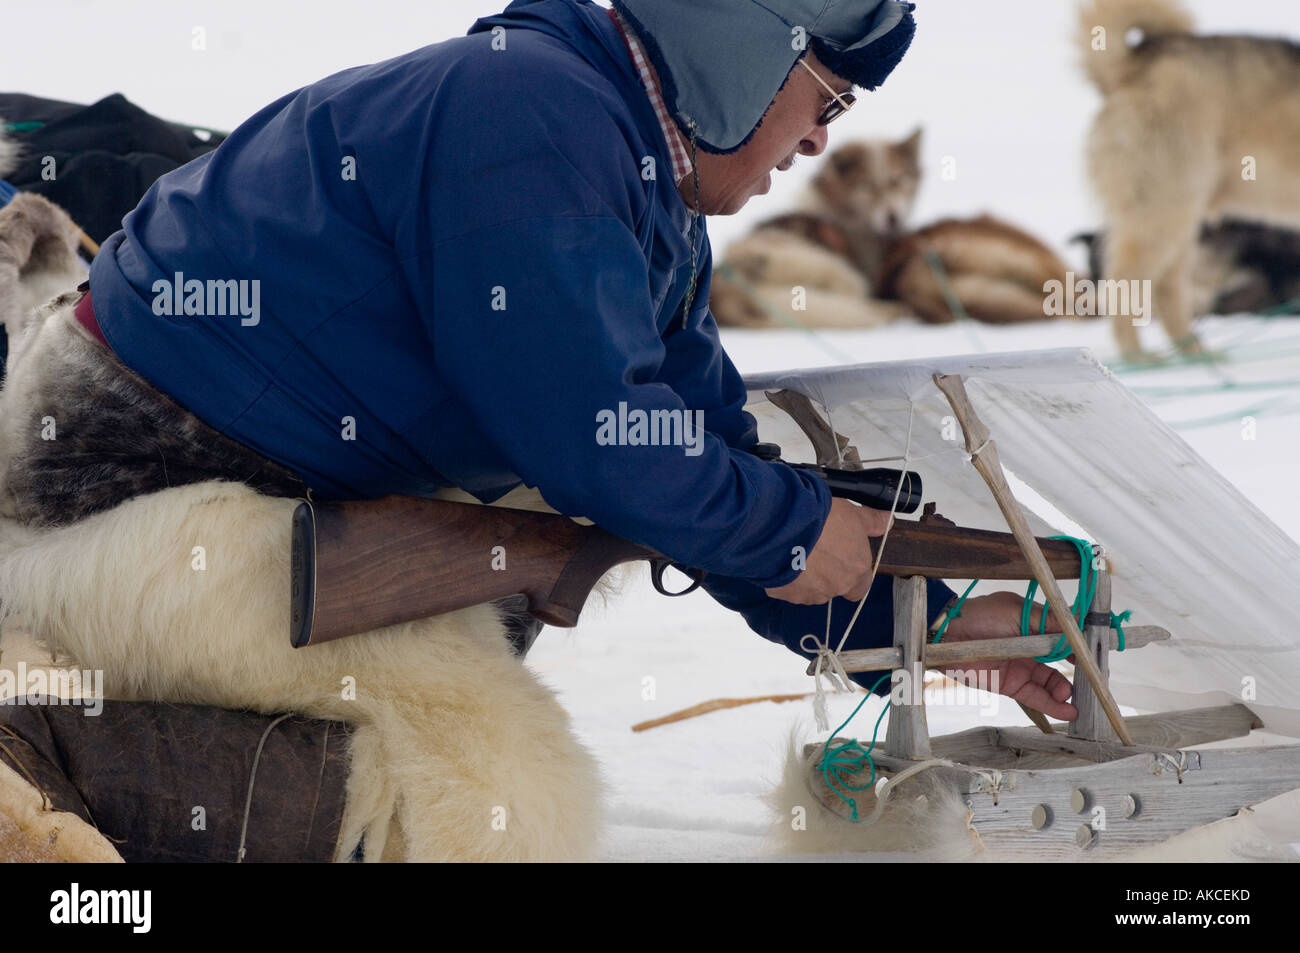 La chasse de subsistance traditionnelle des Inuits pour la chasse au phoque annelé Qaanaaq Groenland Avril 2006 Banque D'Images